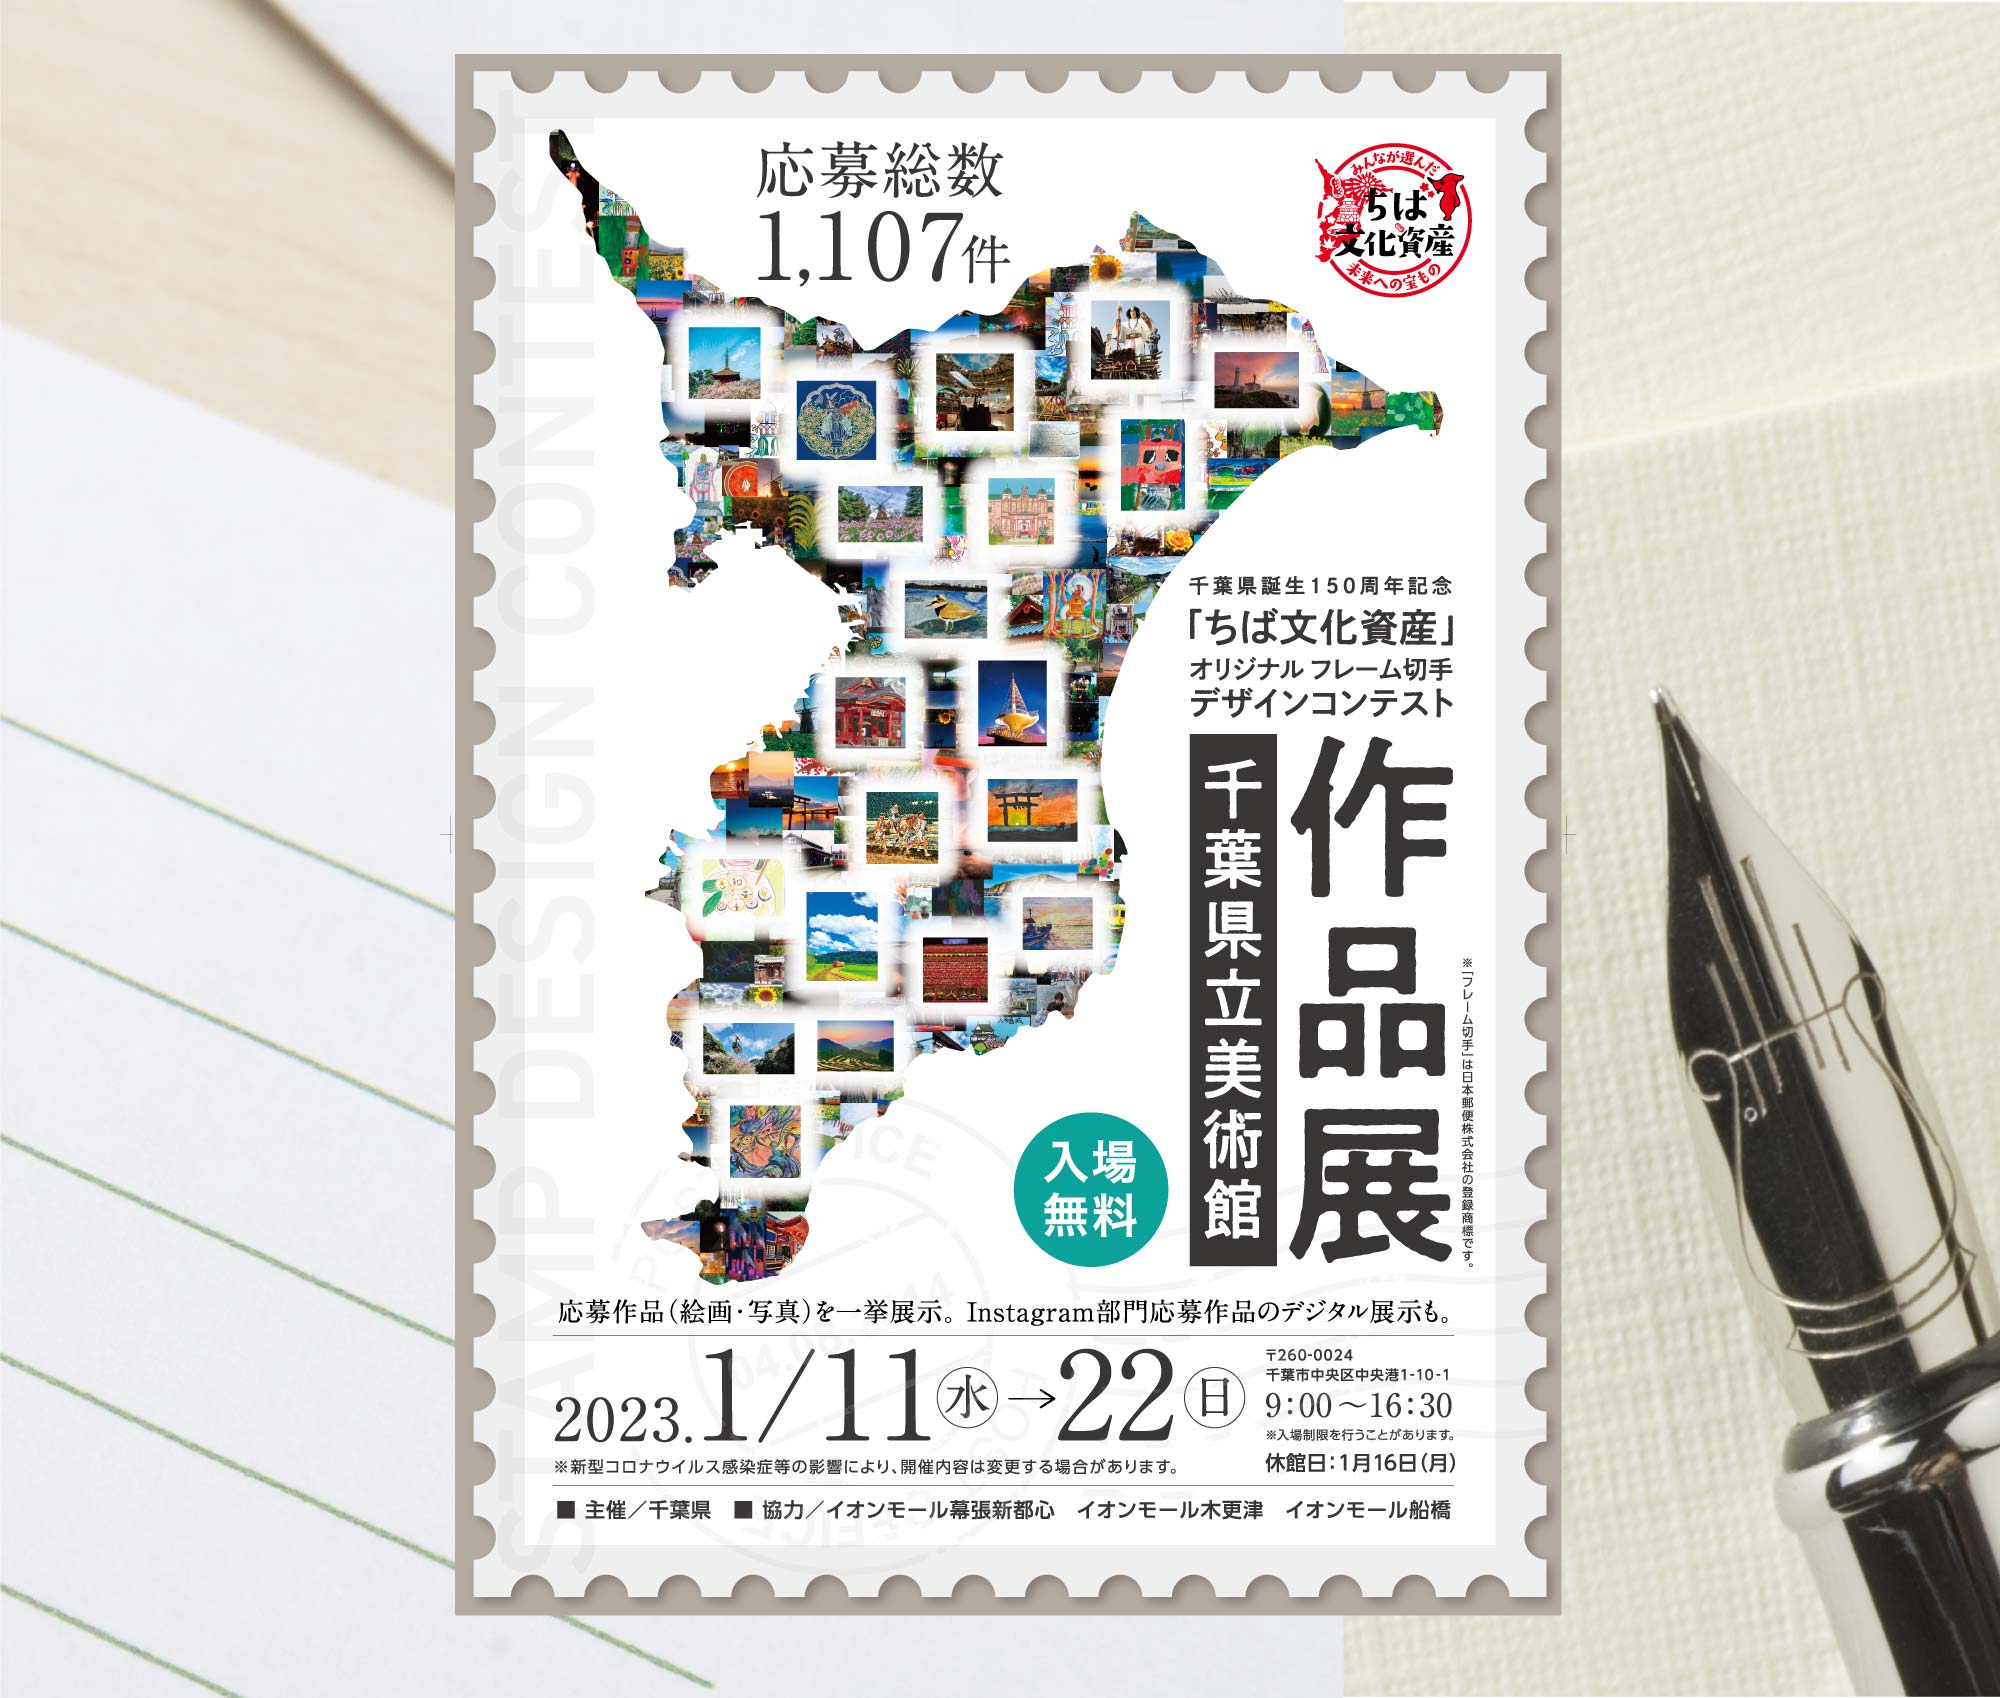 「ちば文化資産」オリジナルフレーム切手 デザインコンテスト 令和5年(2023年)に迎える千葉県生誕150周年を記念し、オリジナル フレーム切手を作成します。